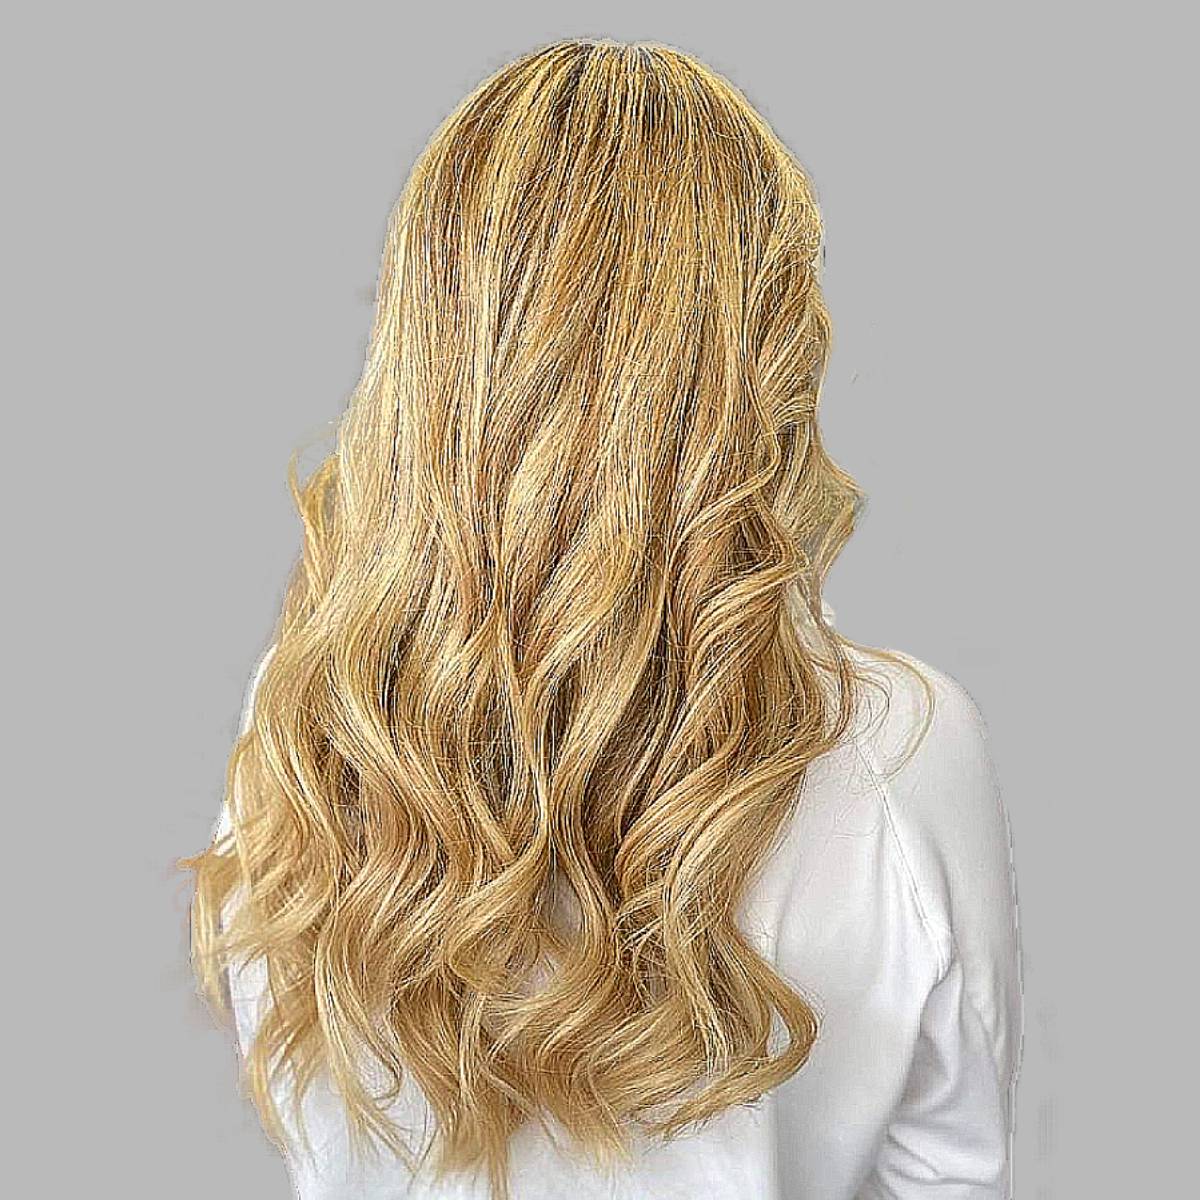 22 Warm Blonde Hair Colors Trending On Instagram